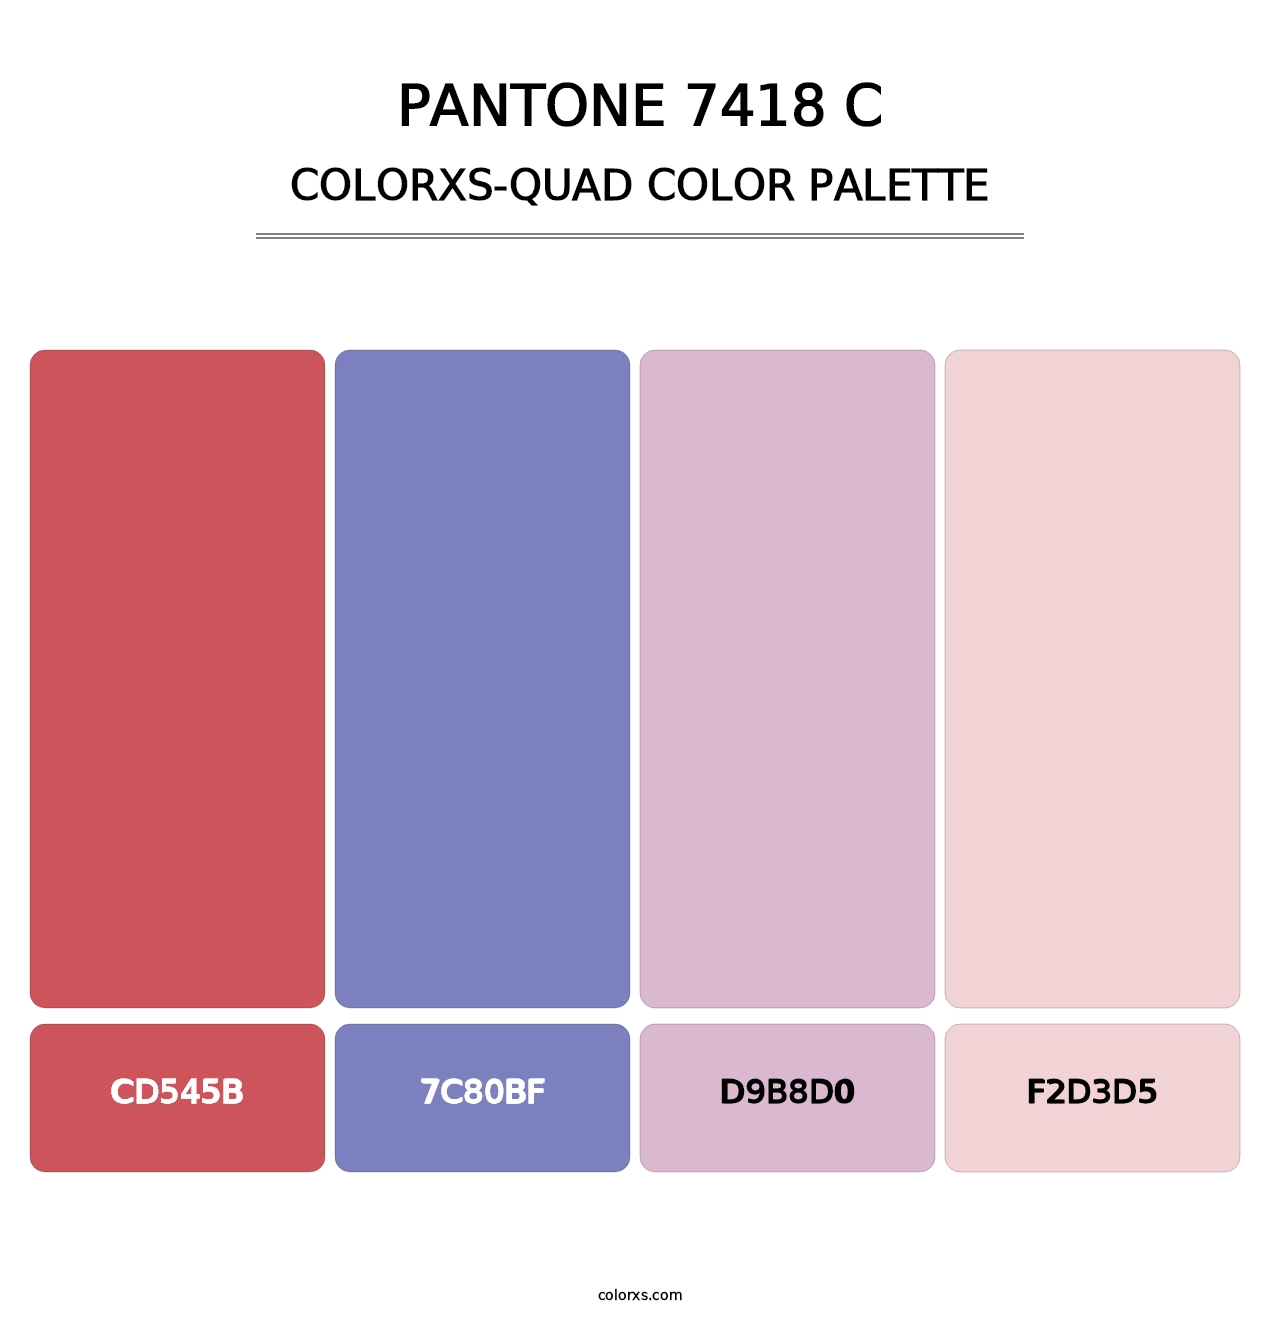 PANTONE 7418 C - Colorxs Quad Palette